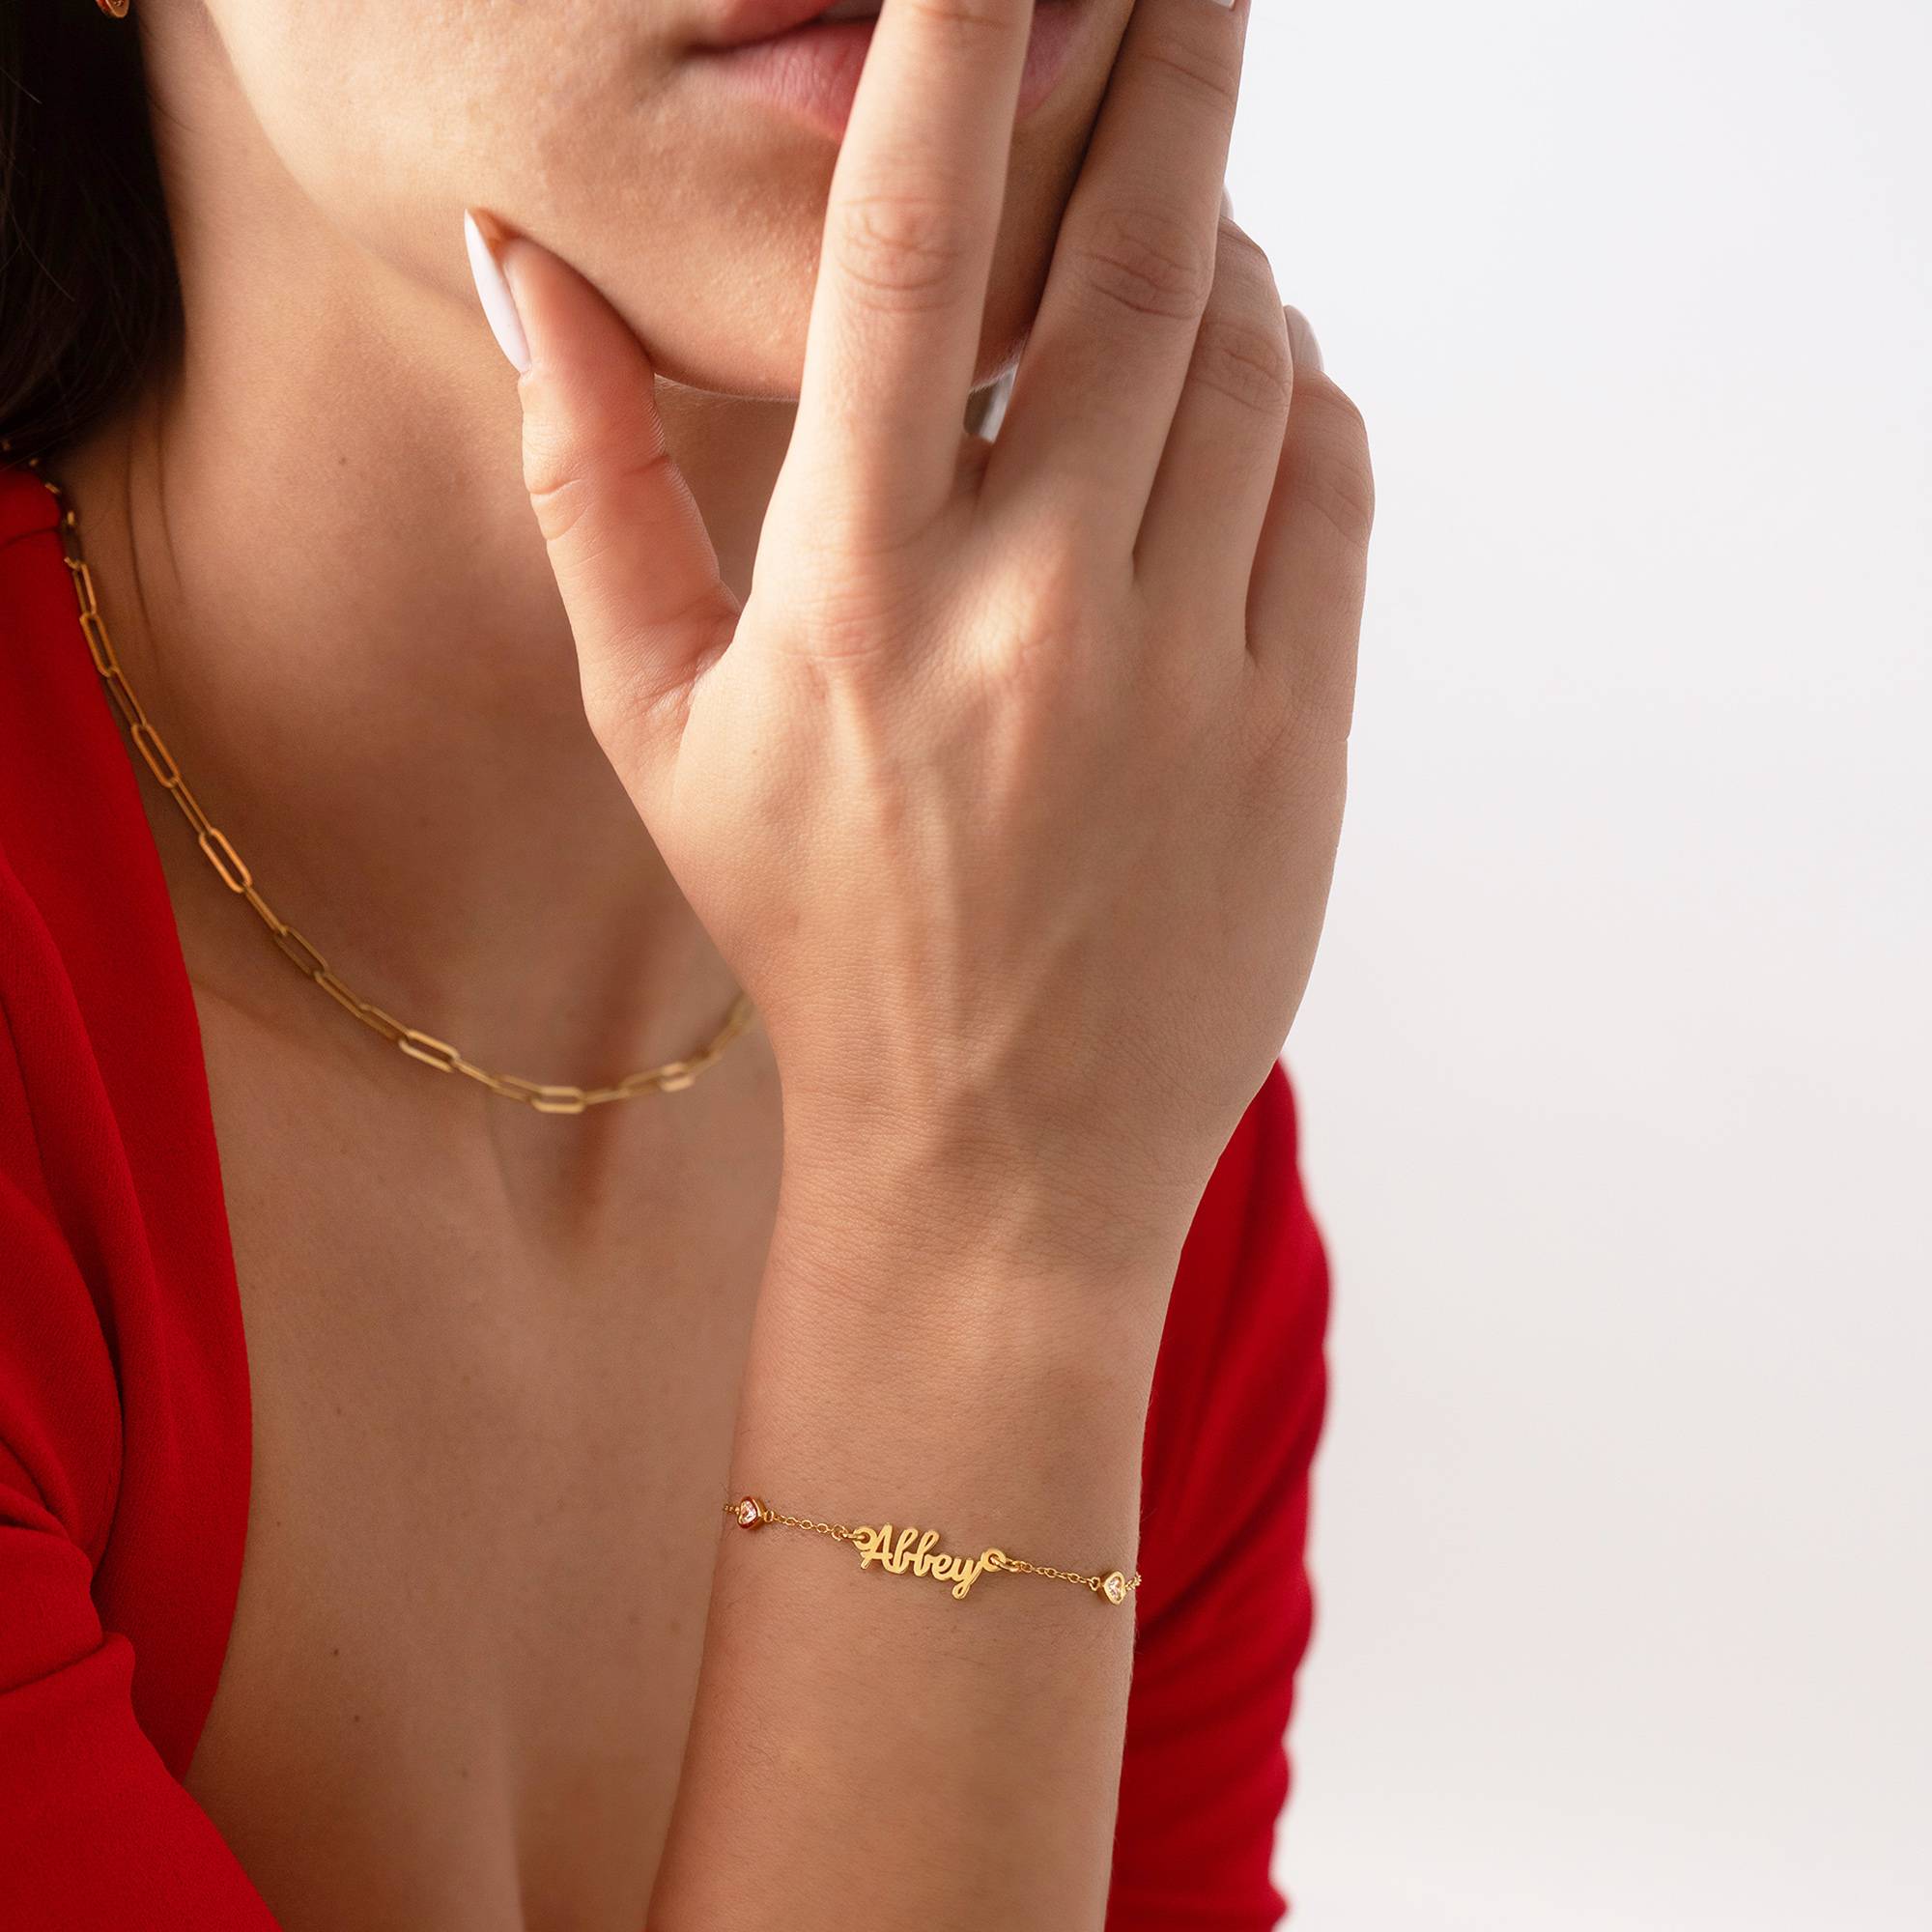 Charli Heart Chain Name armbånd i 18K guldbelægning-2 produkt billede